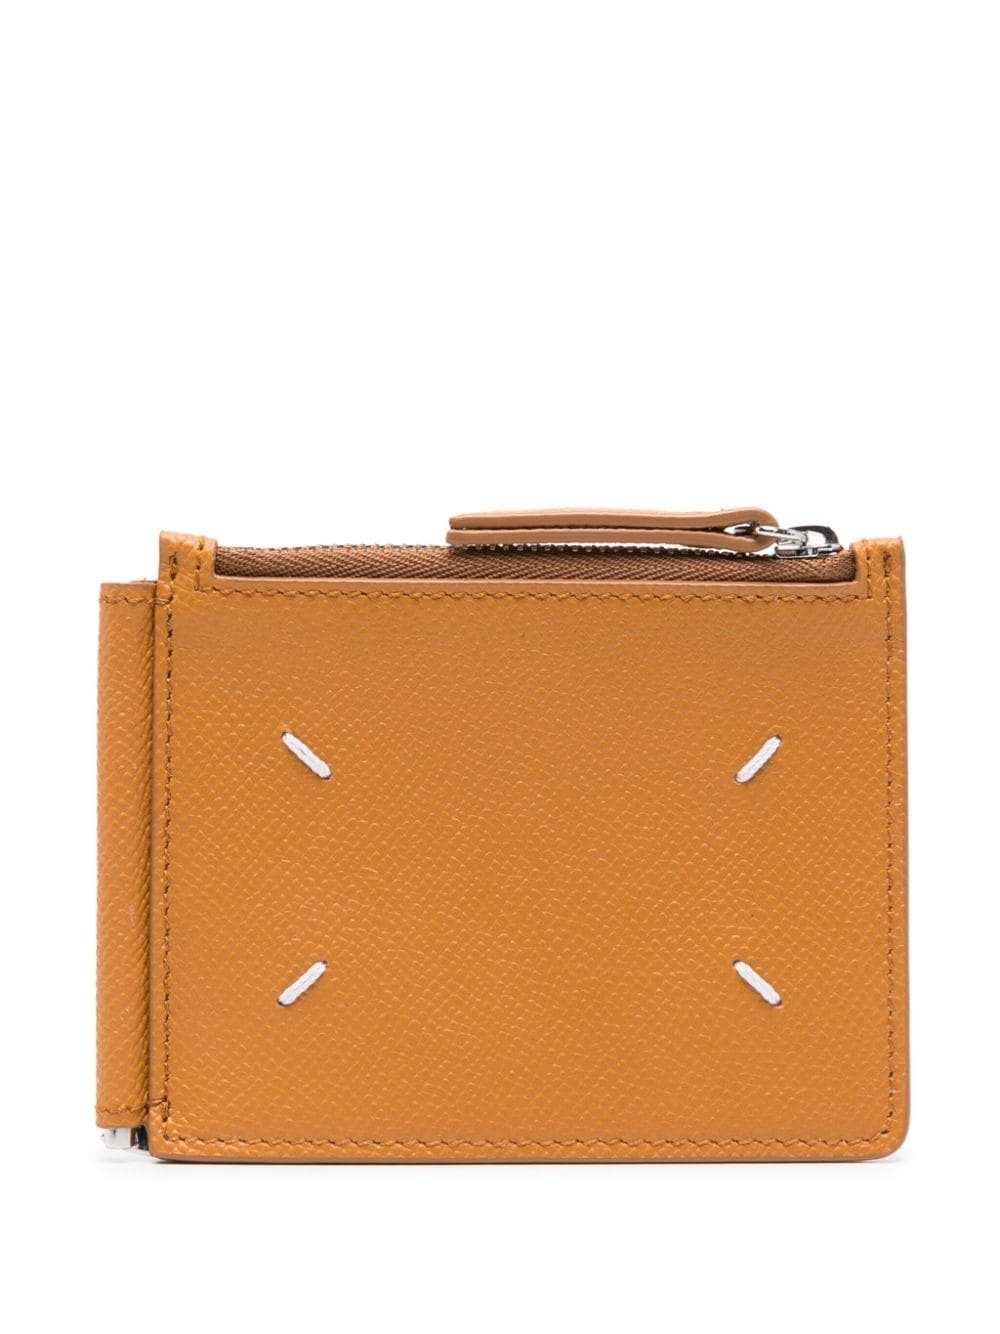 bi-fold leather wallet - 2